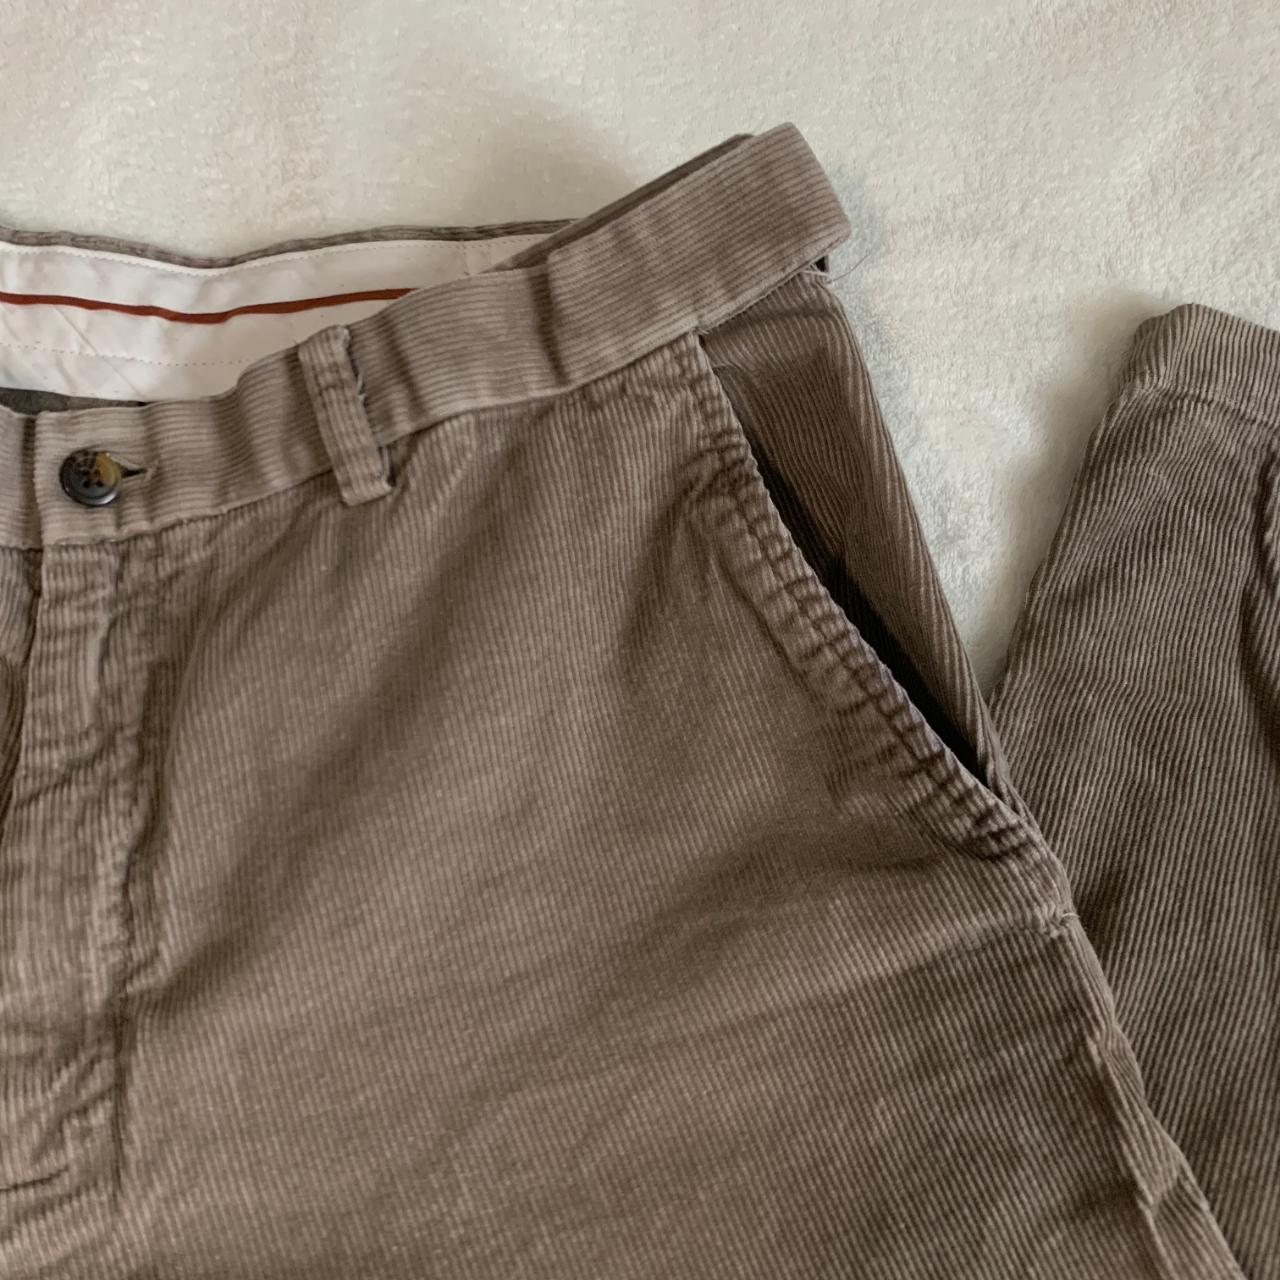 Haggar Men's Brown Trousers (2)